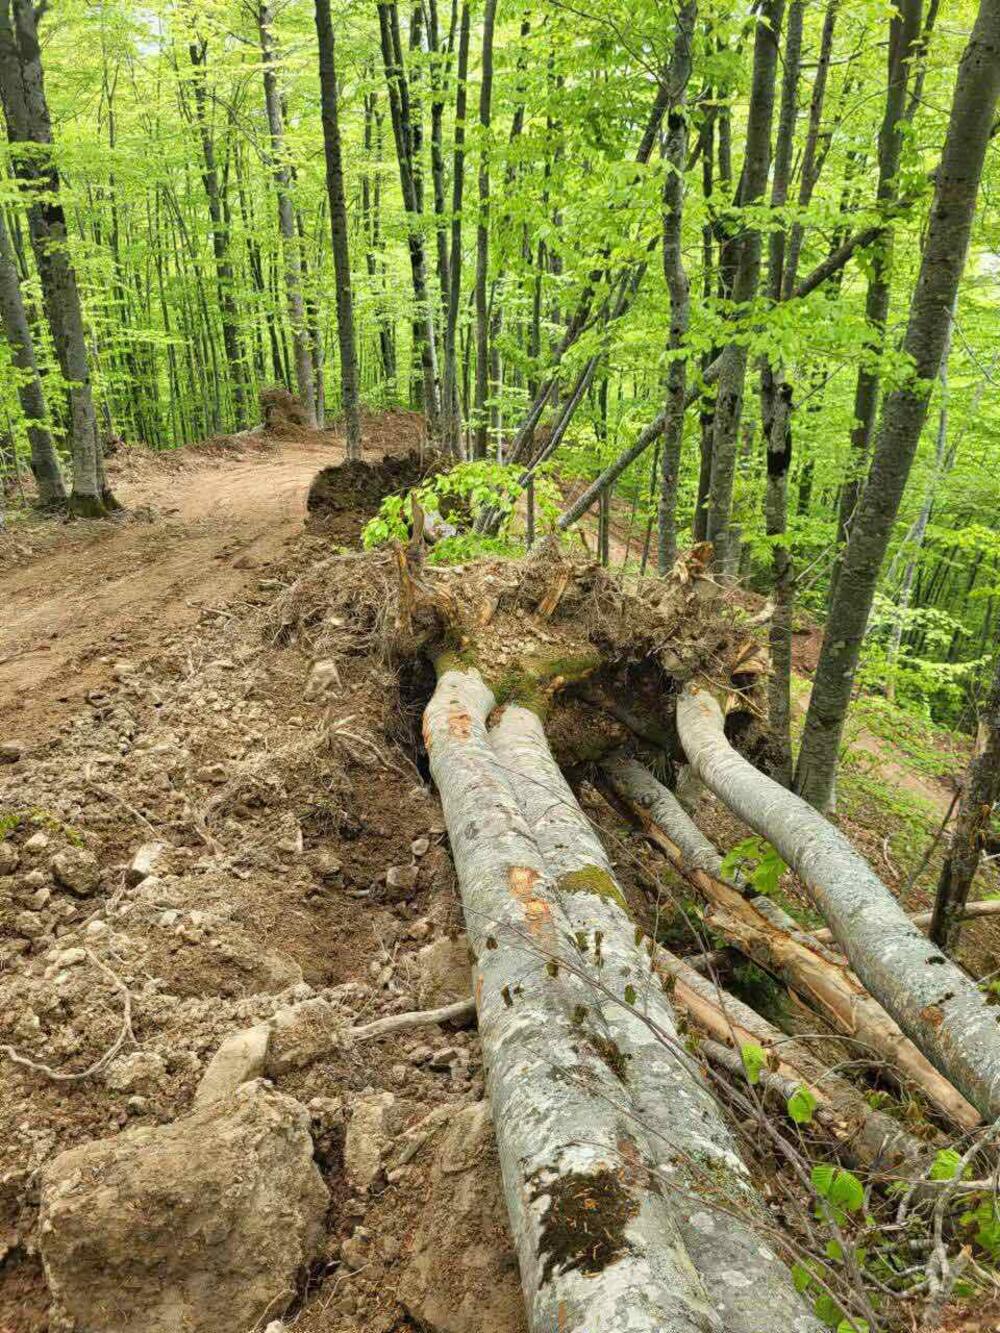 <p>"Cijeli kilometar puta je probijen teškim mašinama koje su osim stabala preturile i veće količine zemlje što dodatno urušava ekosistem u inače zakonom zaštićenoj prirodnoj zoni"</p>